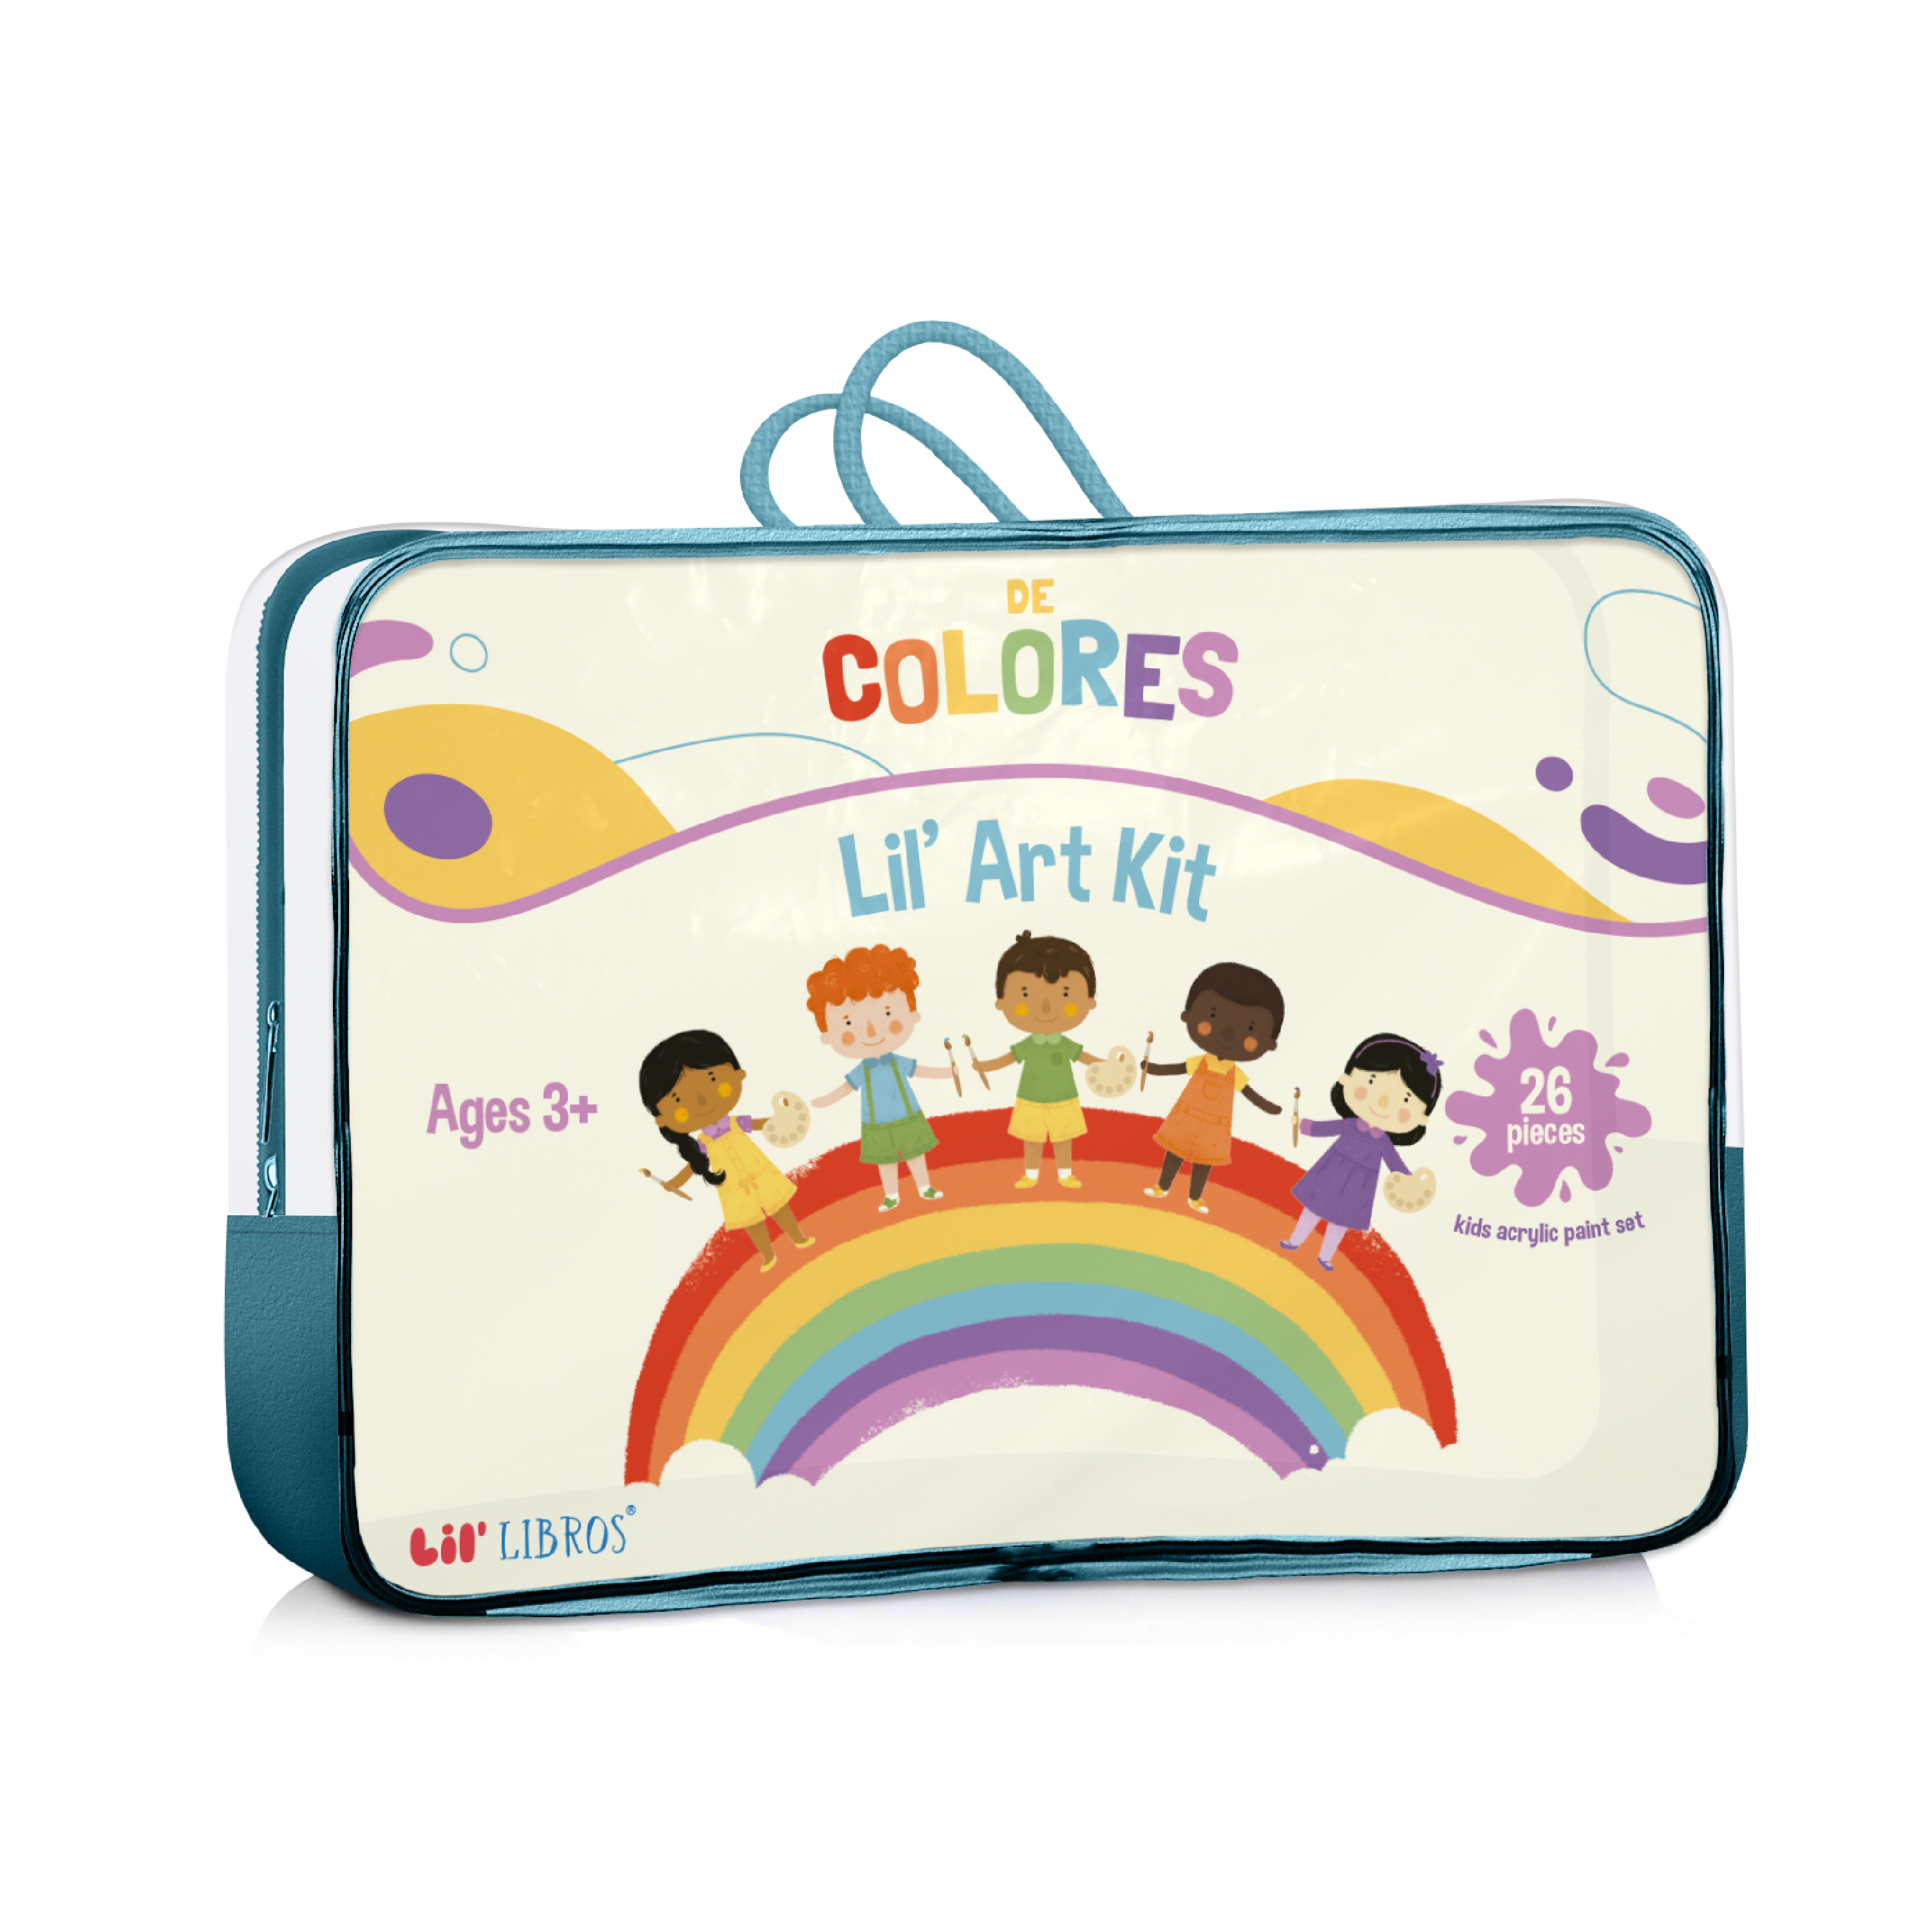 Lil' De Colores Art Kit – Lil' Libros